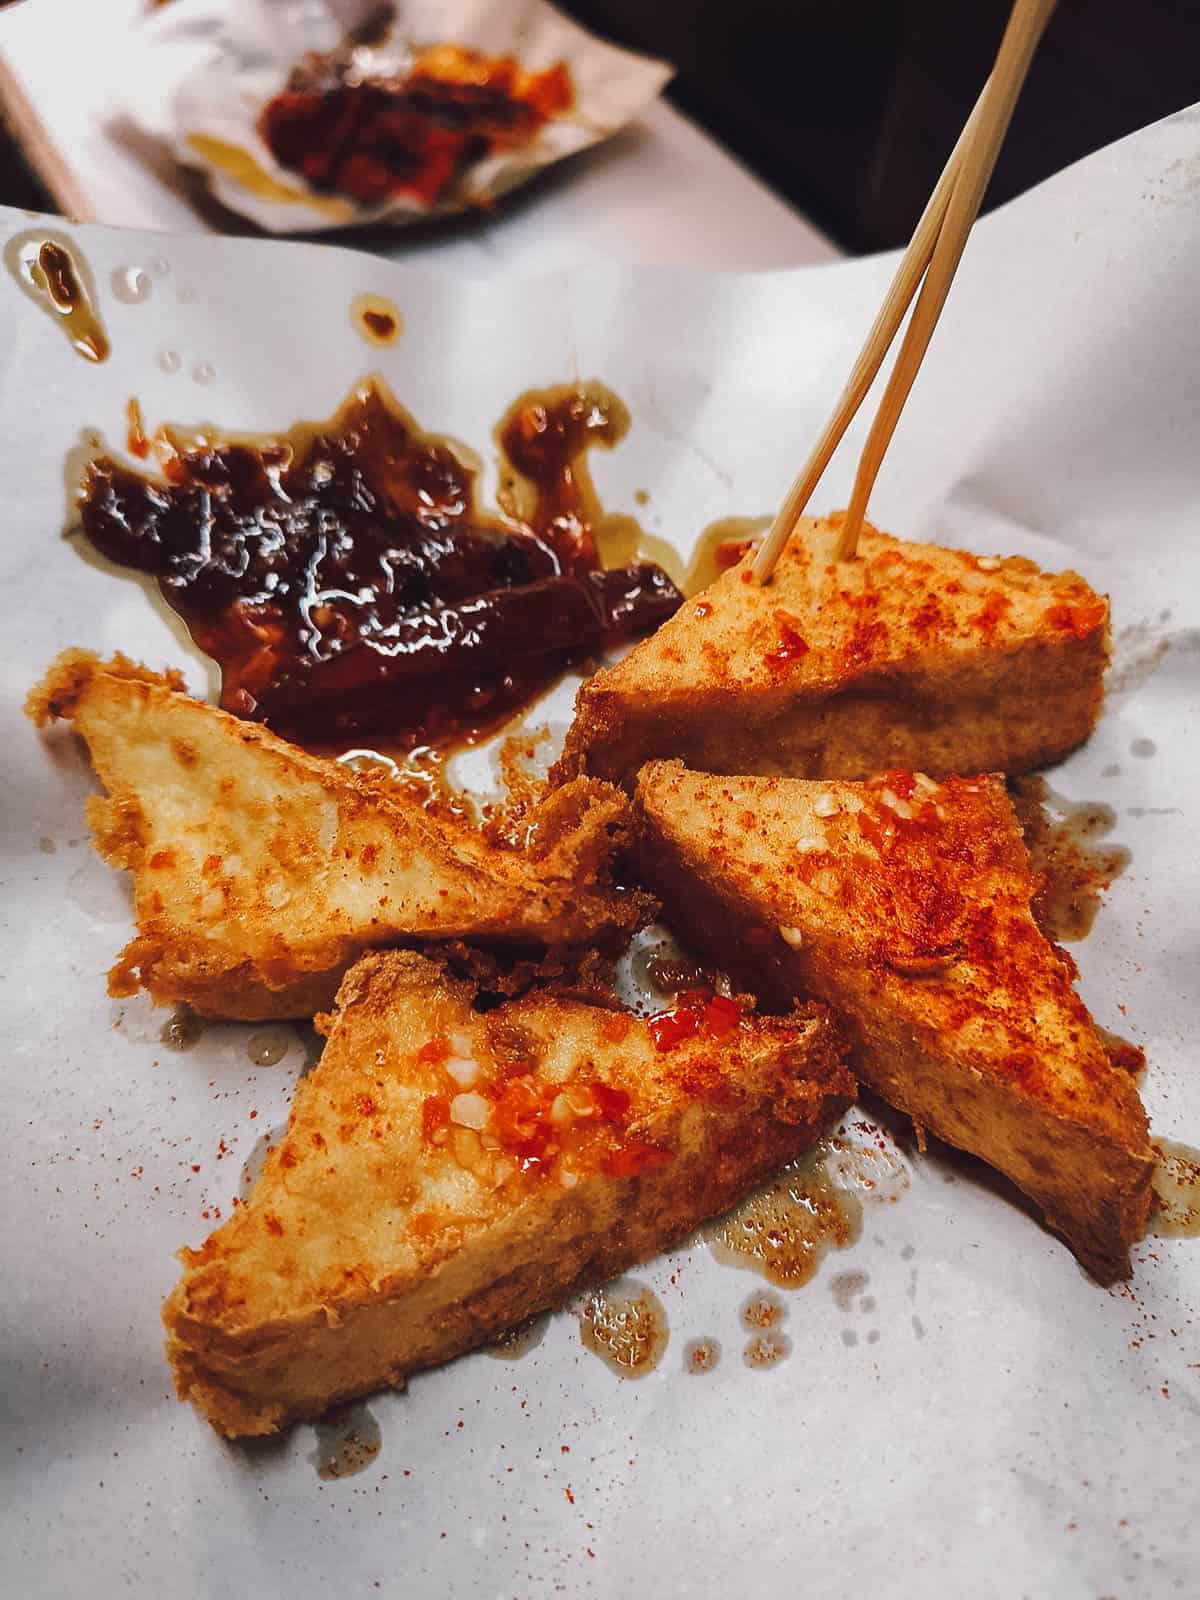 Old Kowloon Eats: Private Hong Kong Food Tour